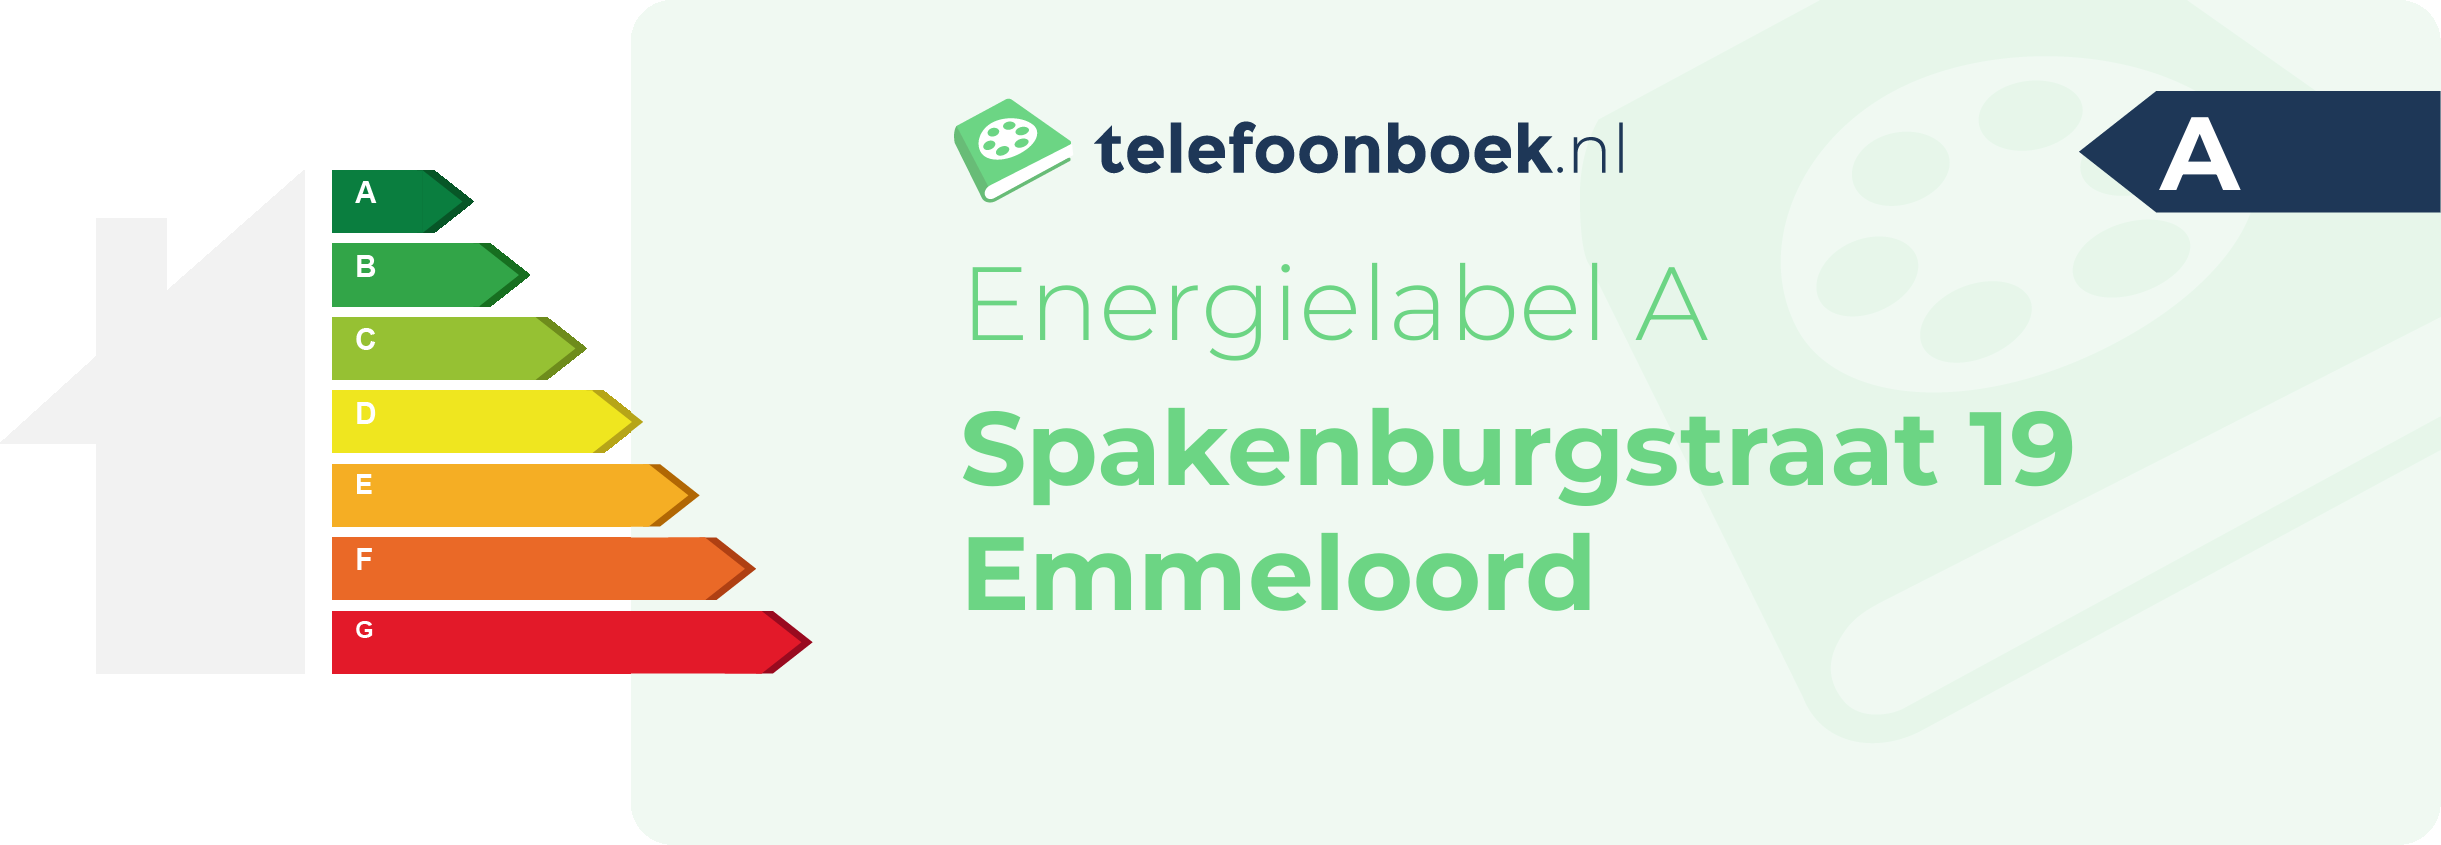 Energielabel Spakenburgstraat 19 Emmeloord